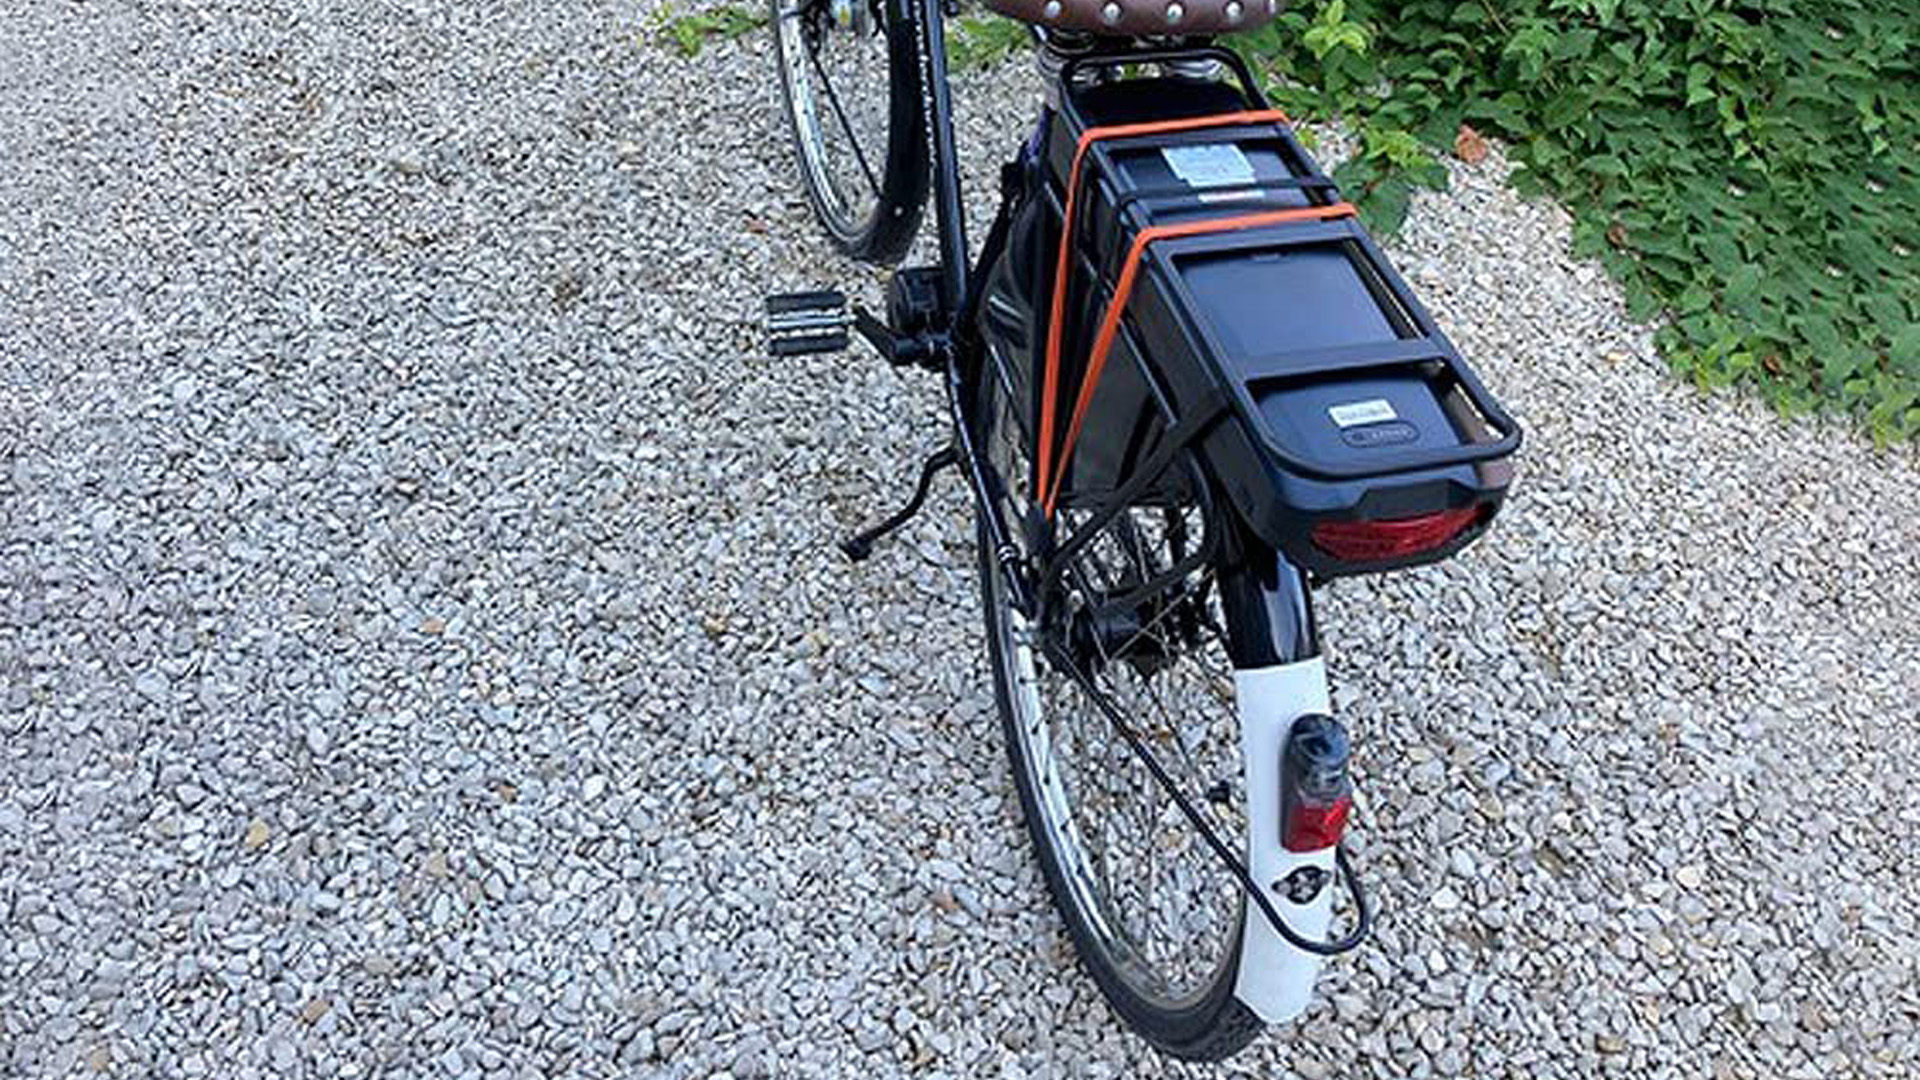 Afectar Torbellino cobertura Consejos y guía para comprar un kit para convertir tu bicicleta en una bicicleta  eléctrica (e-Bike) | Computer Hoy